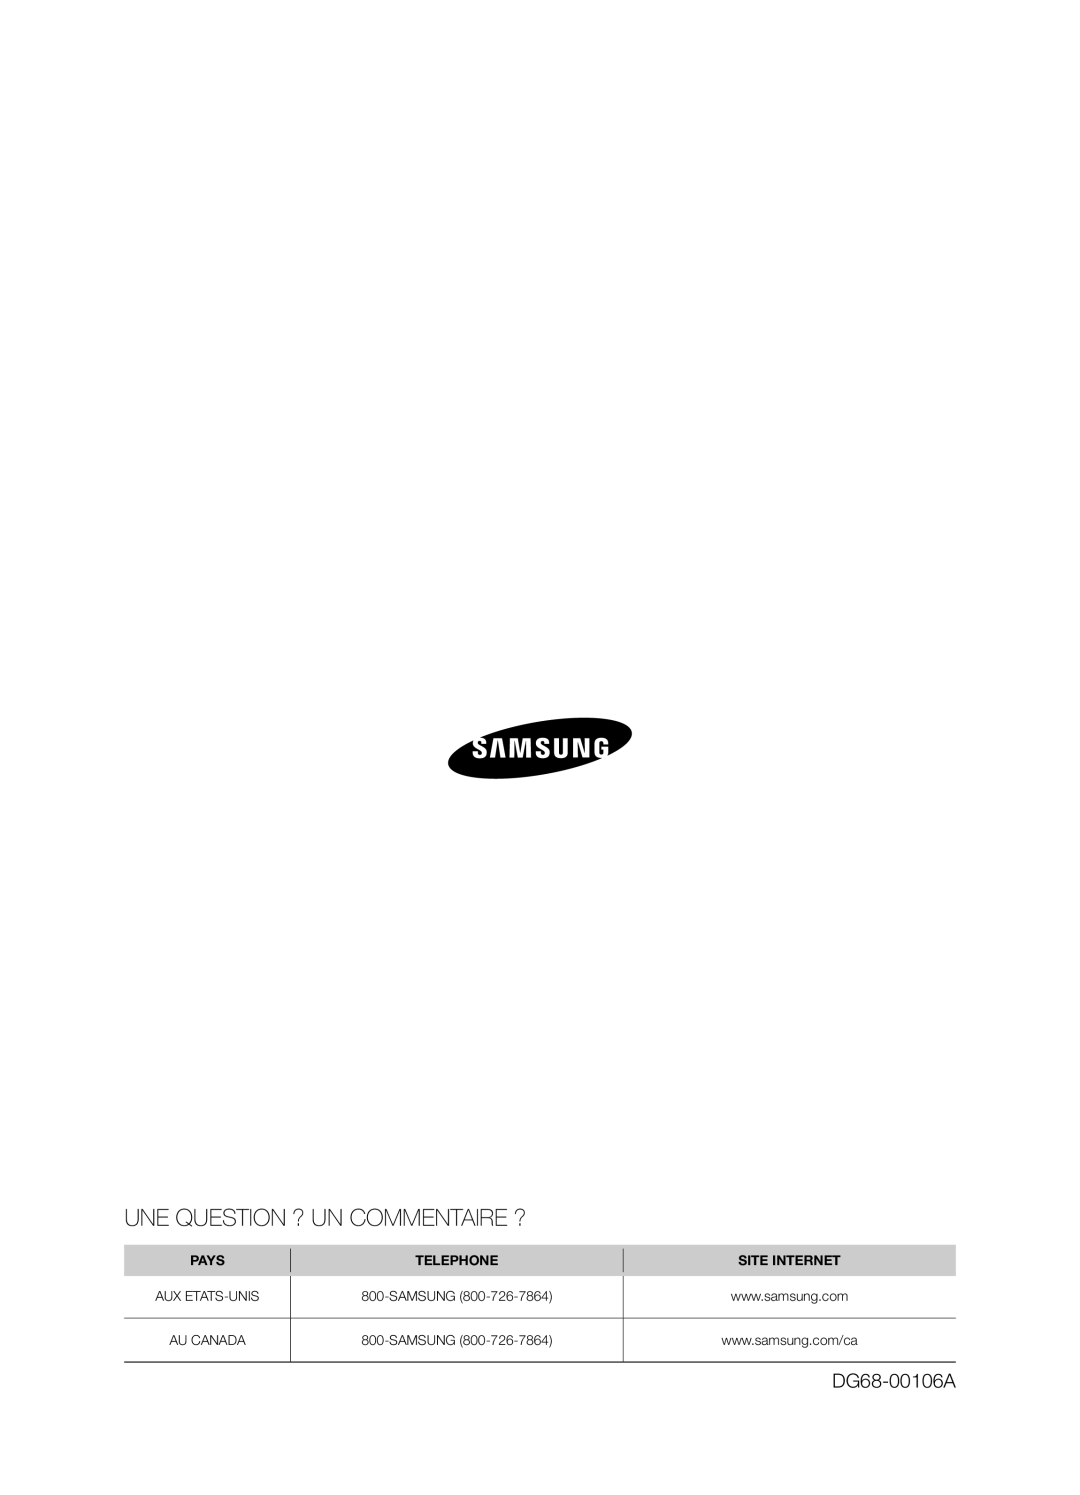 Samsung FTQ352IWX user manual Une Question ? Un Commentaire ?, DG68-00106A, Pays, Telephone, Site Internet 